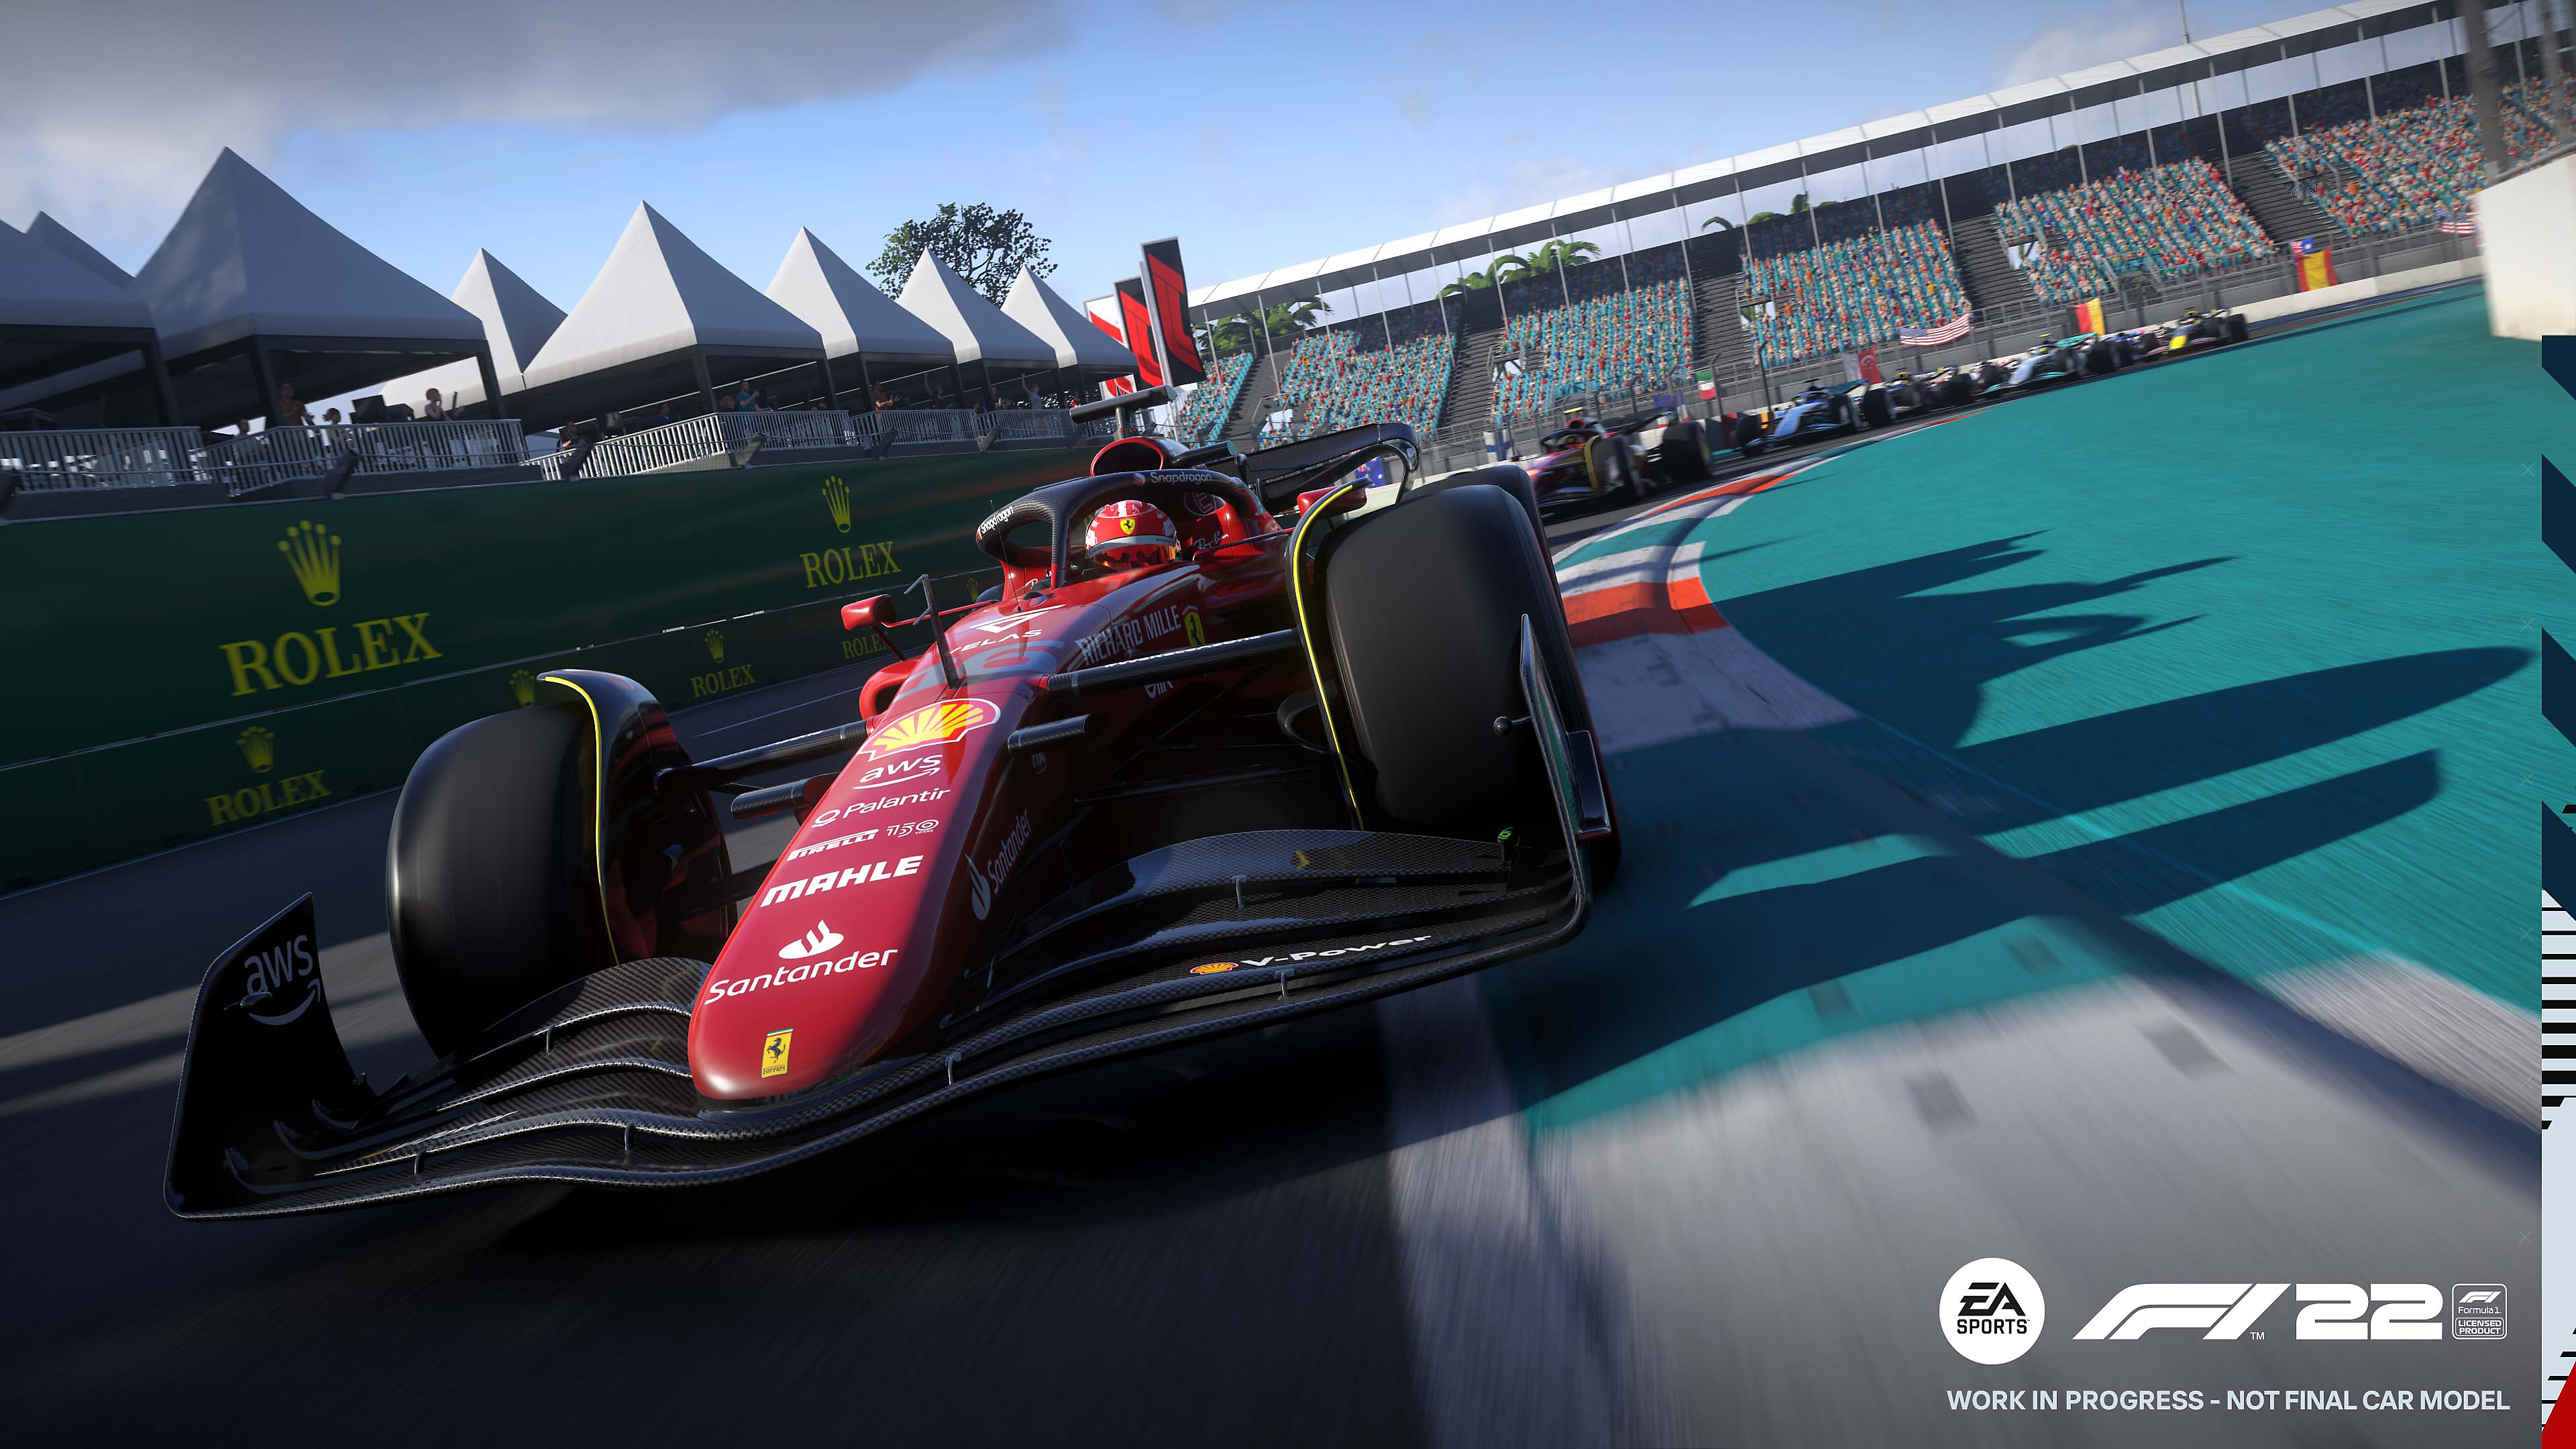 Captura de pantalla de F1 22 mostrando un Ferrari